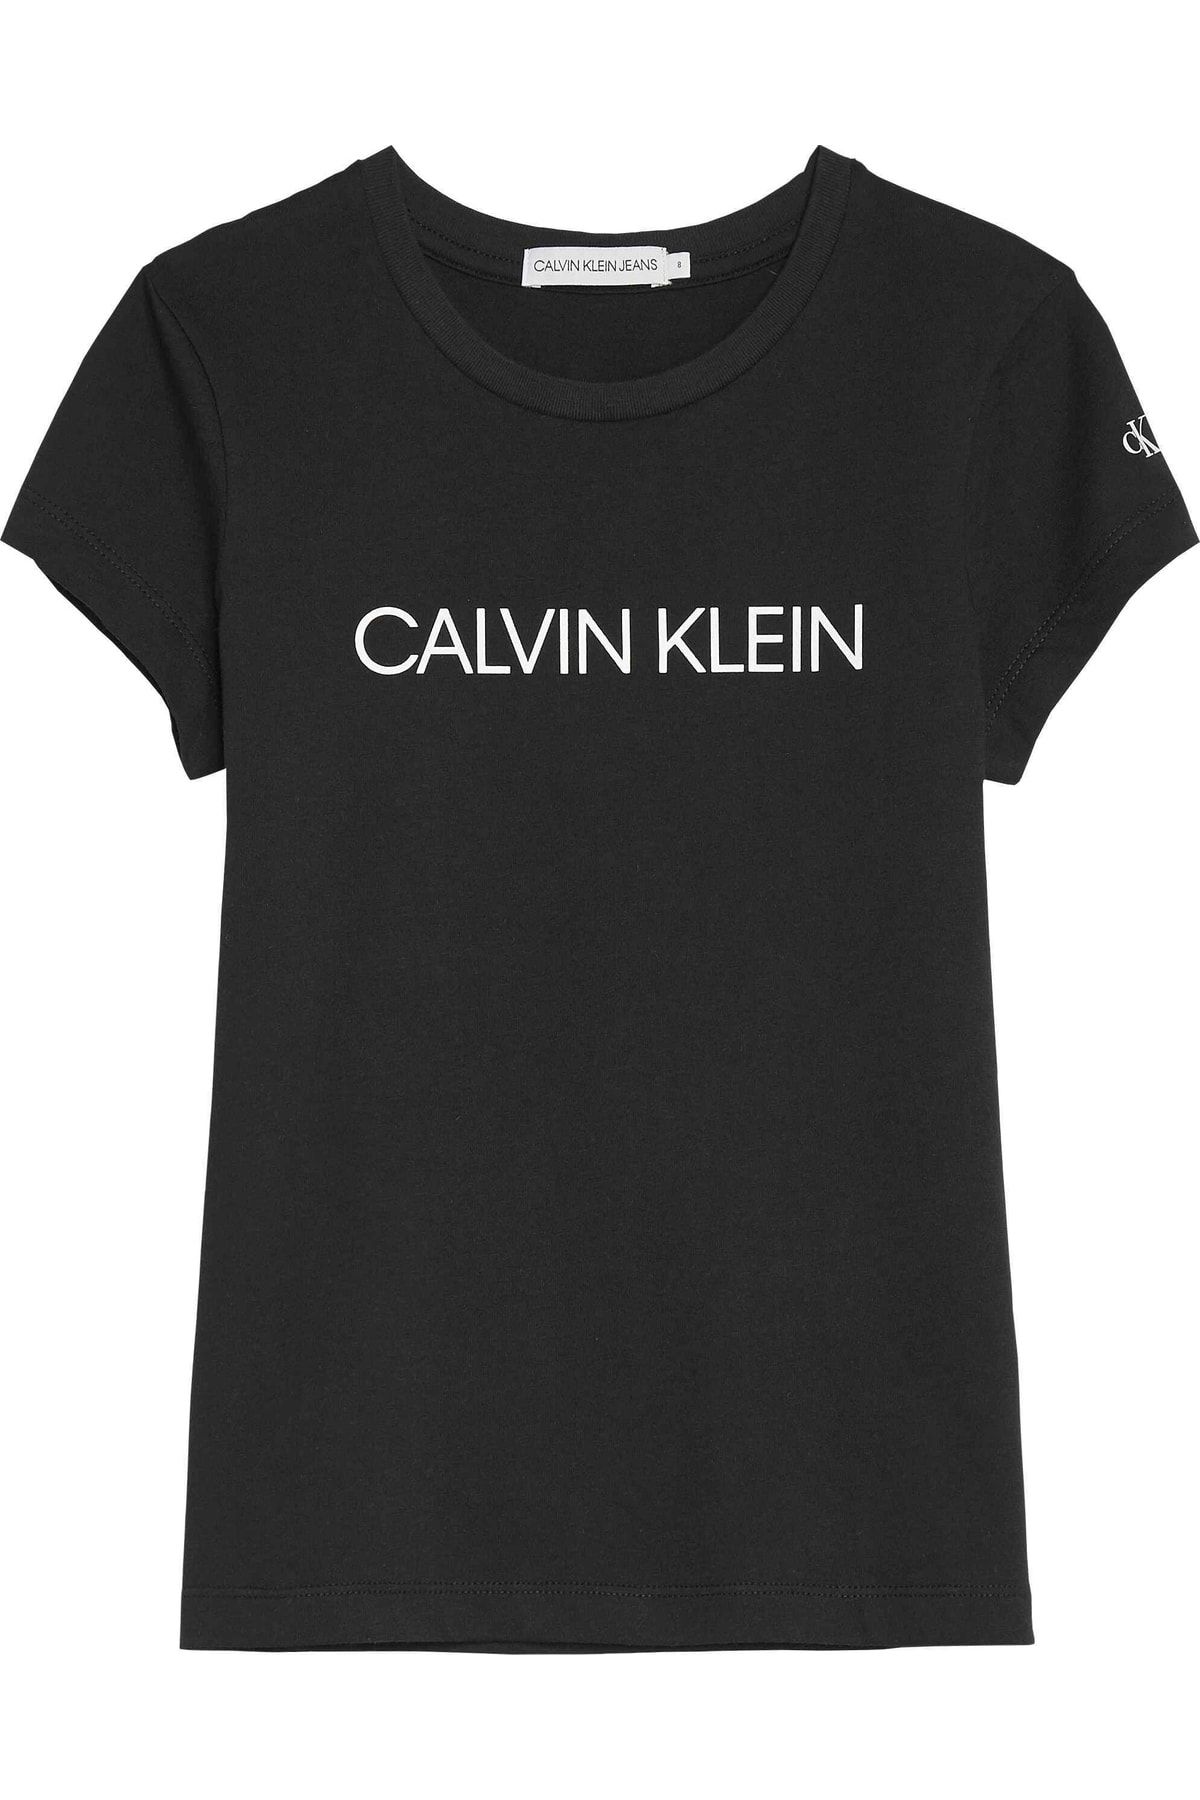 Calvin Klein Mädchen-T-Shirt 20ss1ck0380 - Trendyol